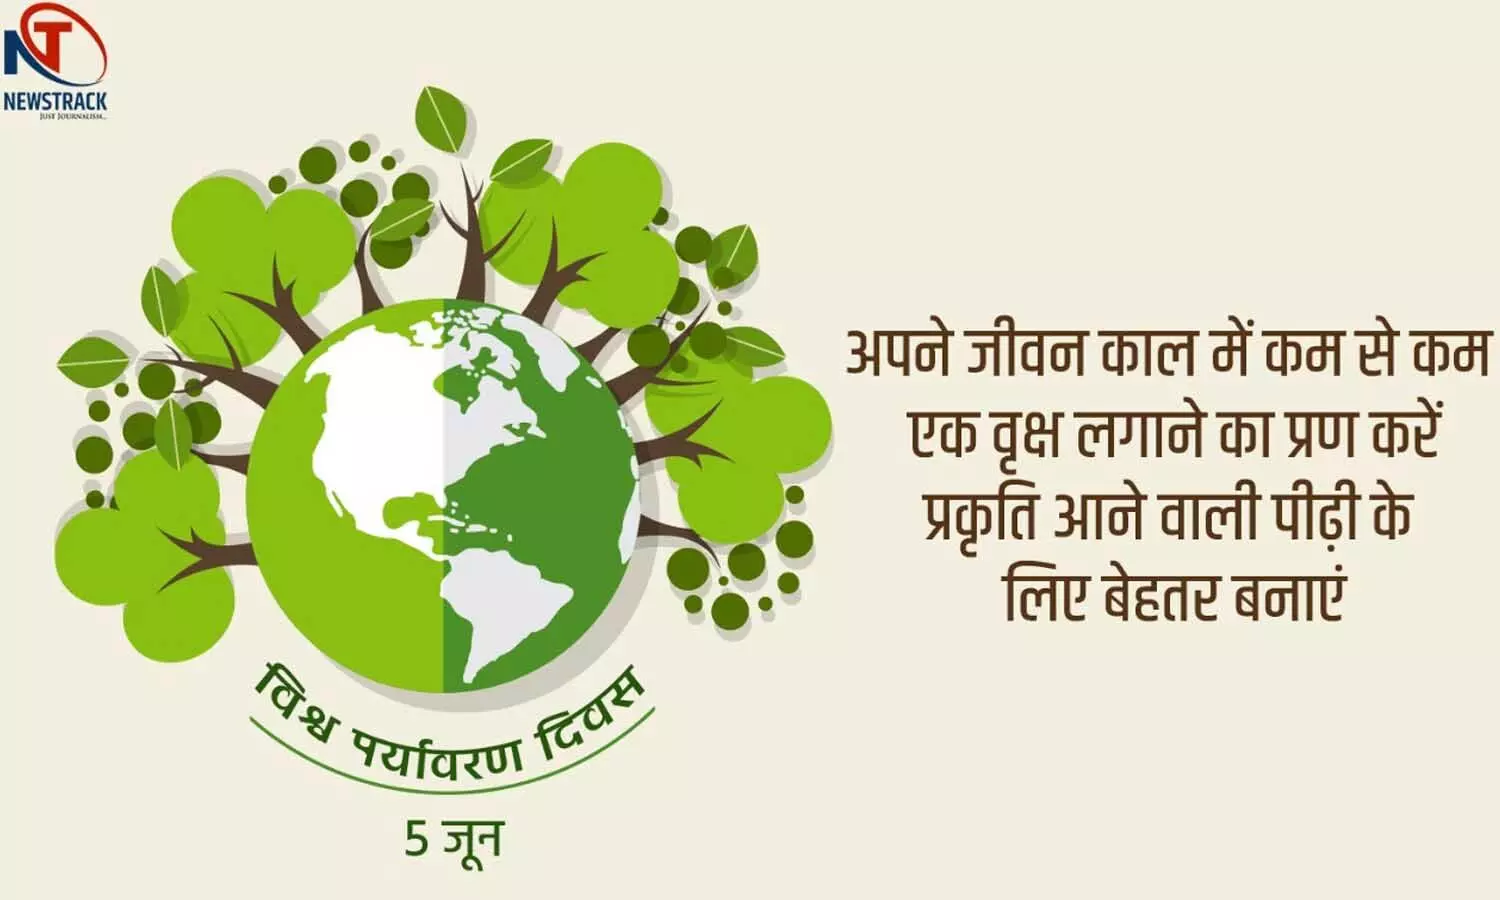 World Environment Day 2021: रेलवे का दावा- भारत में होगी दुनिया की सबसे बड़ी हरित रेलवे